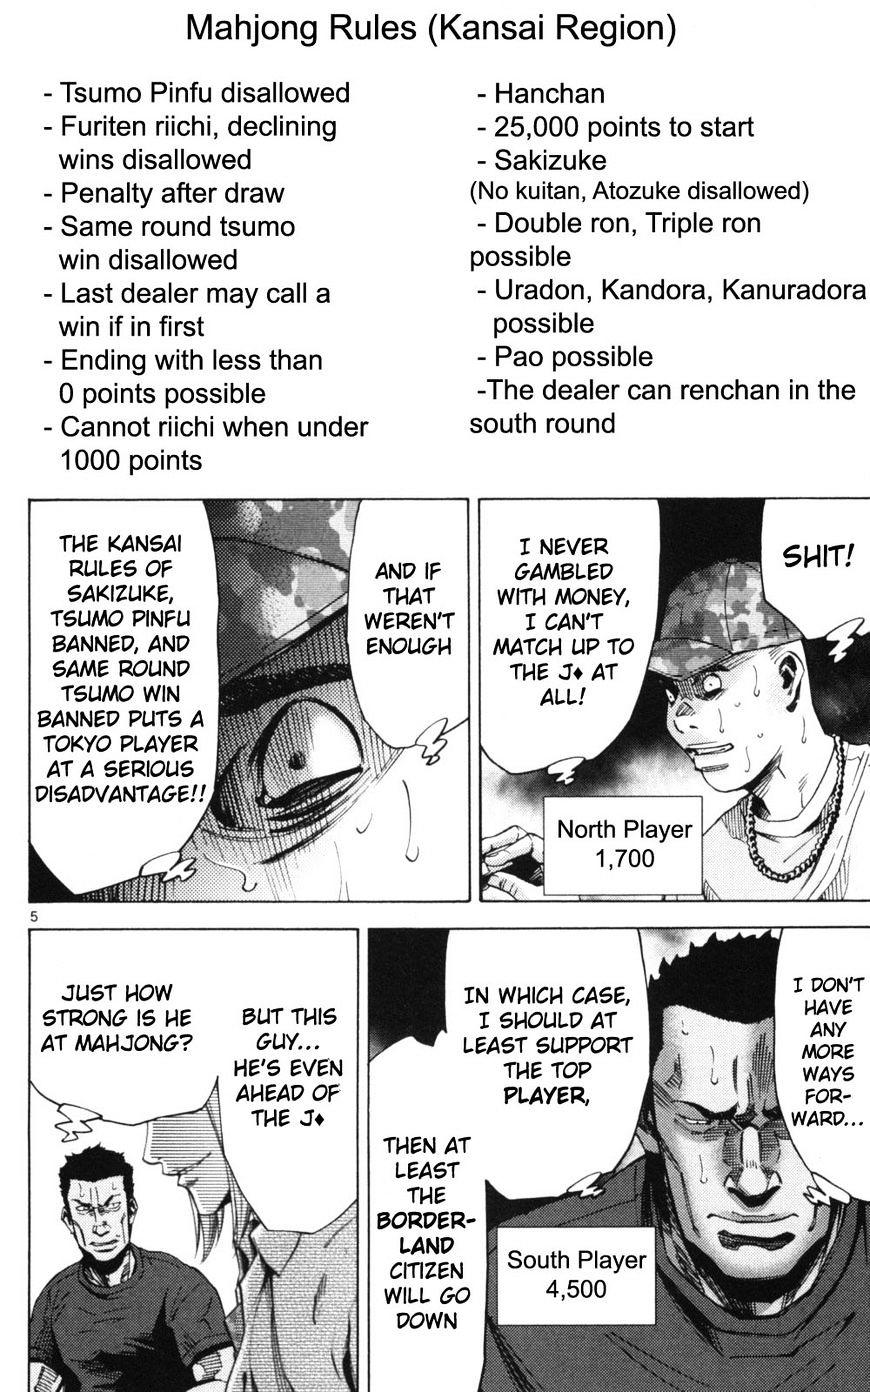 Imawa No Kuni No Alice Chapter 51.1 : Side Story 6 - King Of Diamonds (1) page 5 - Mangakakalot